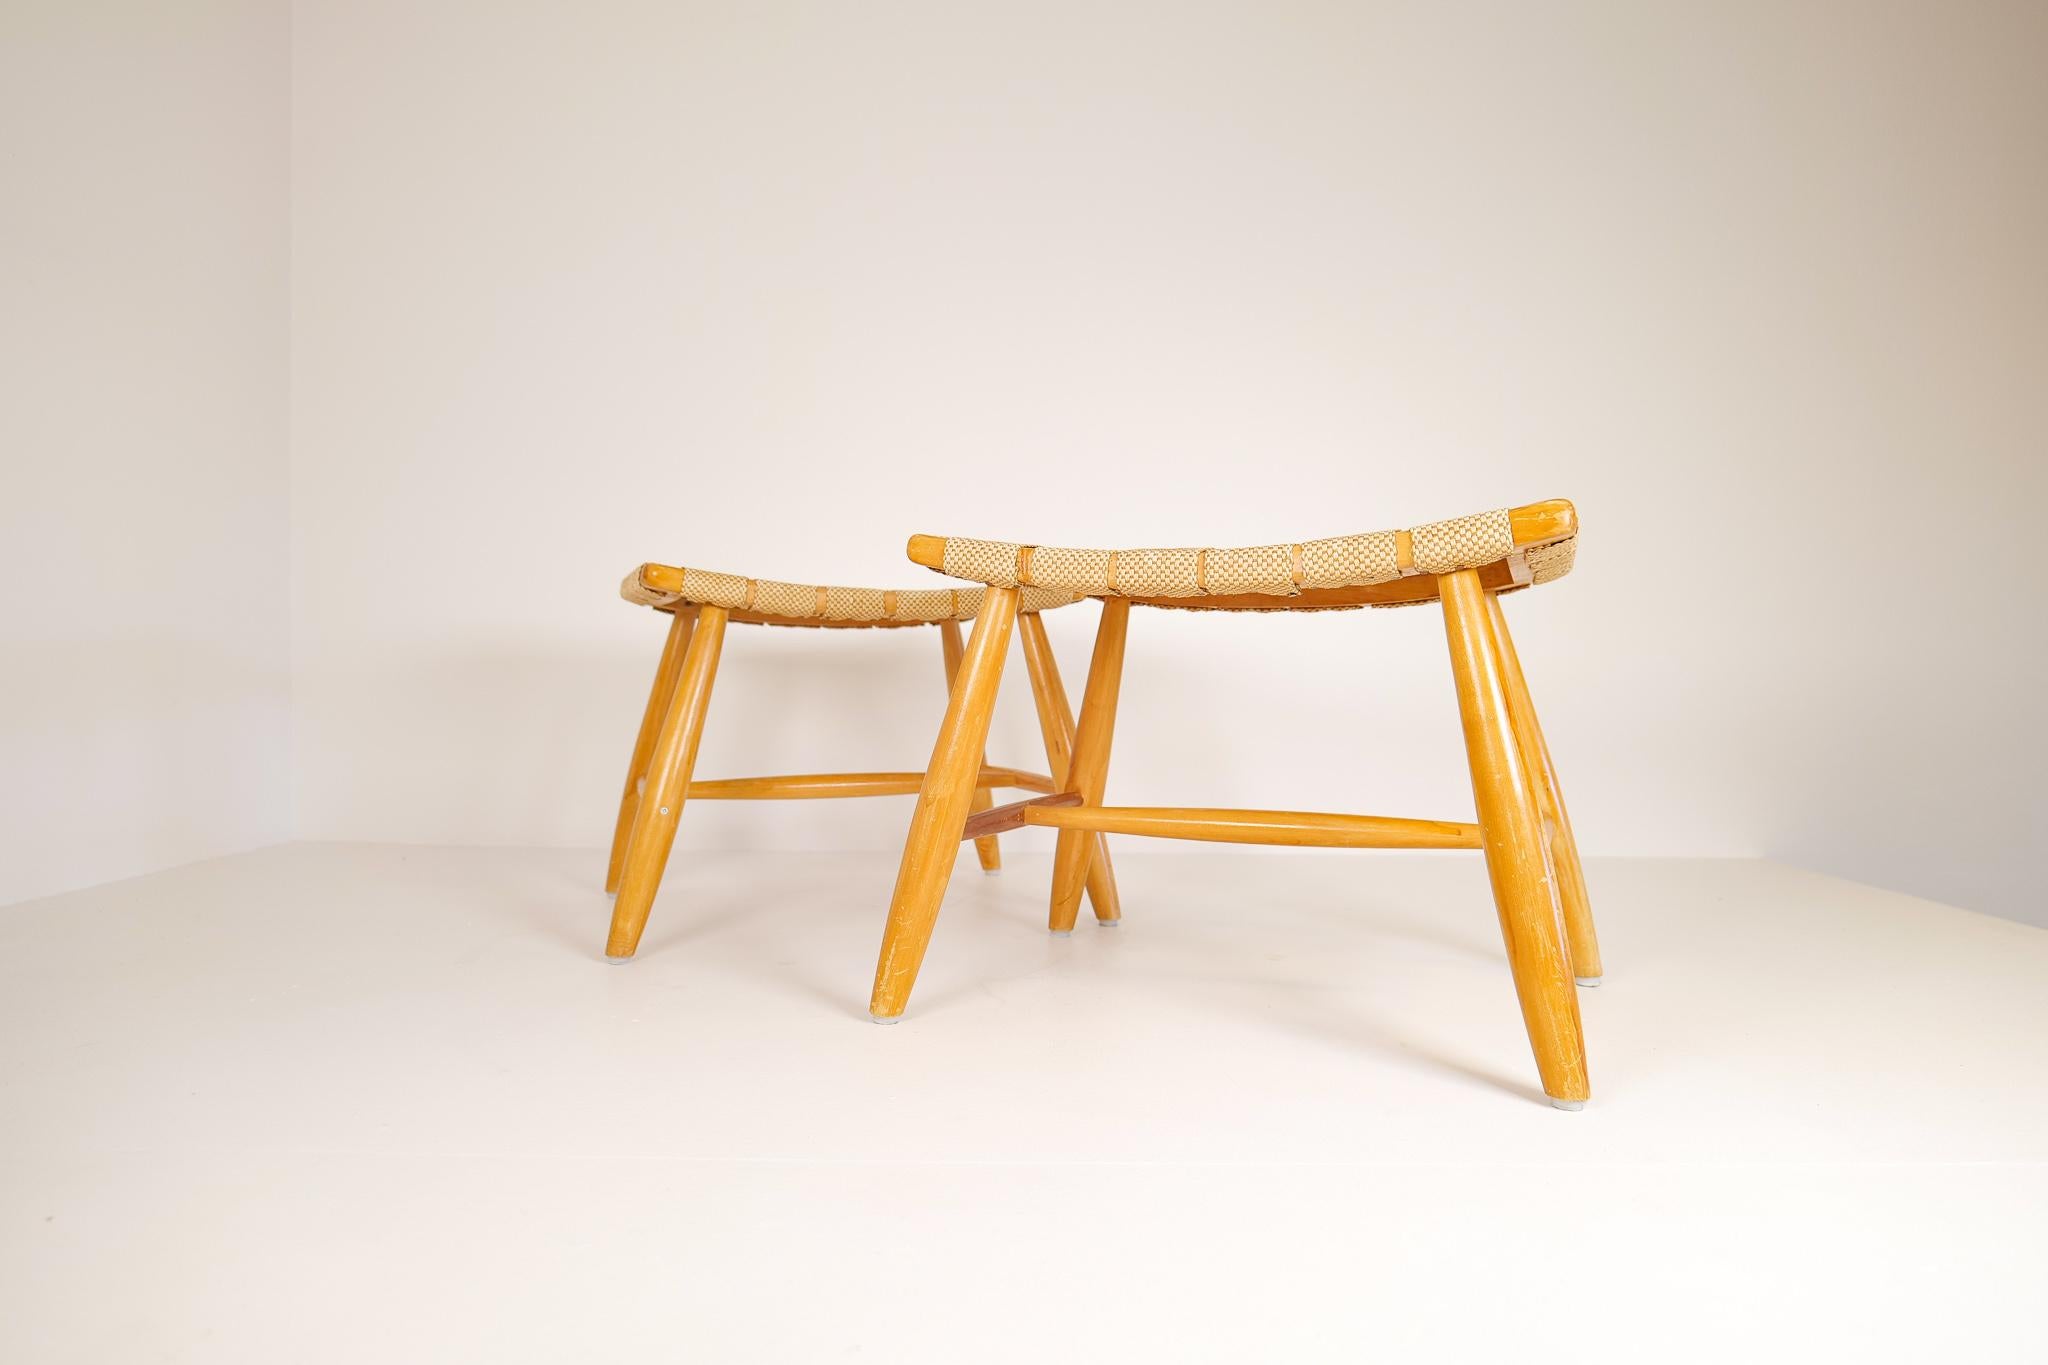 Ein Paar Hocker aus lackierter Birke, hergestellt in, Schweden, 1960er Jahre.
Diese Hocker sind ein gutes Beispiel für gute Handwerkskunst mit minimalistischem Stil, der für skandinavische Möbel bekannt ist. Diese Hocker haben eine Sitzfläche aus